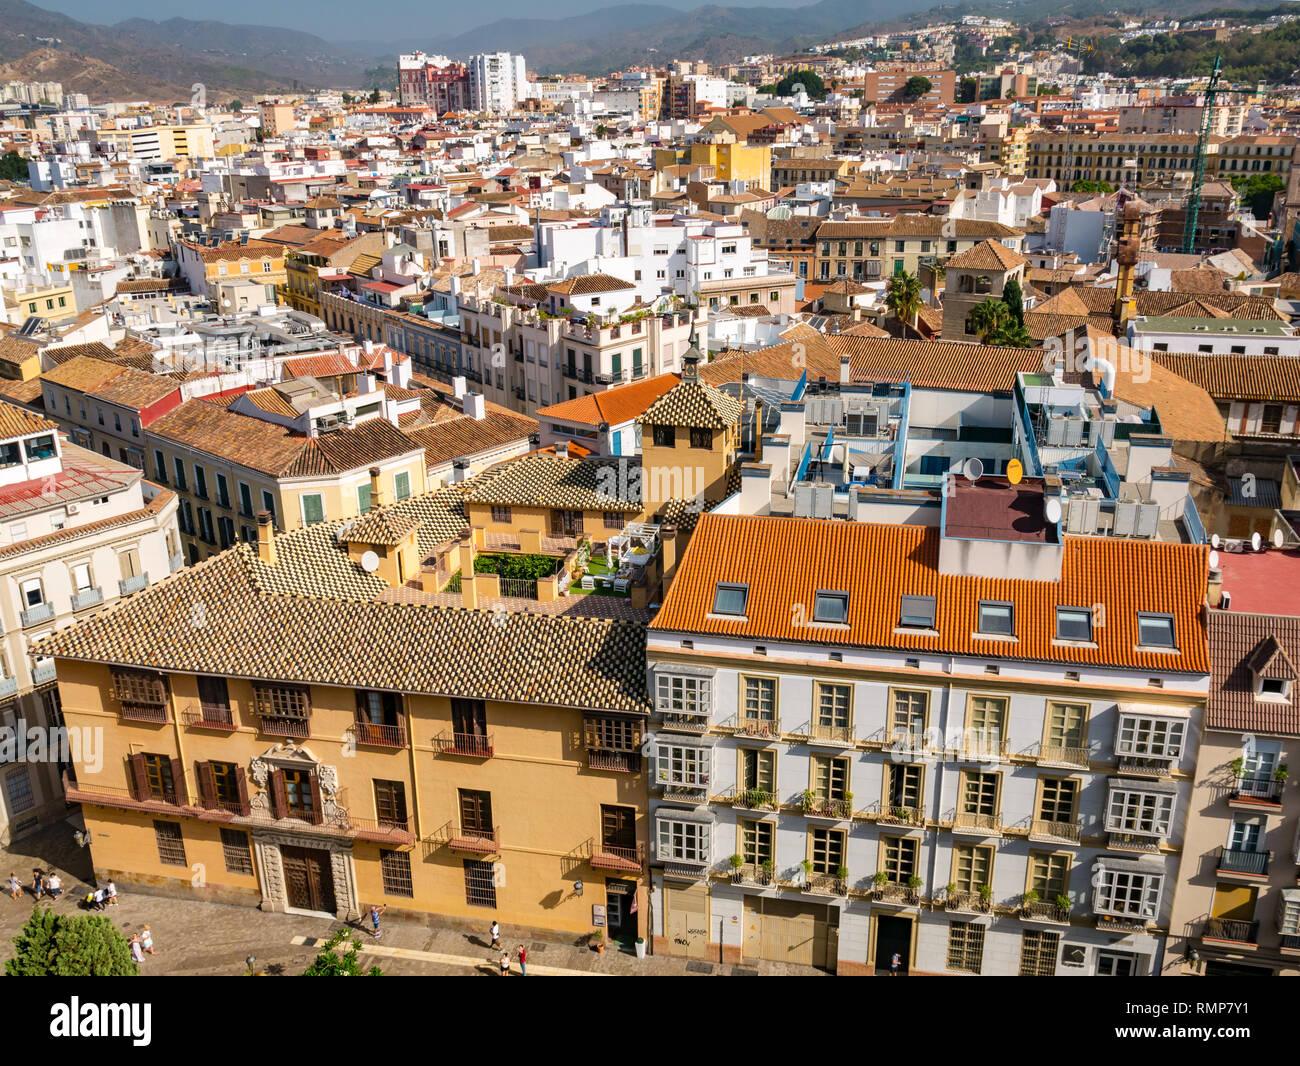 Vista desde arriba de las casas antiguas y calles estrechas, casco antiguo de Málaga, Andalucía, España Foto de stock